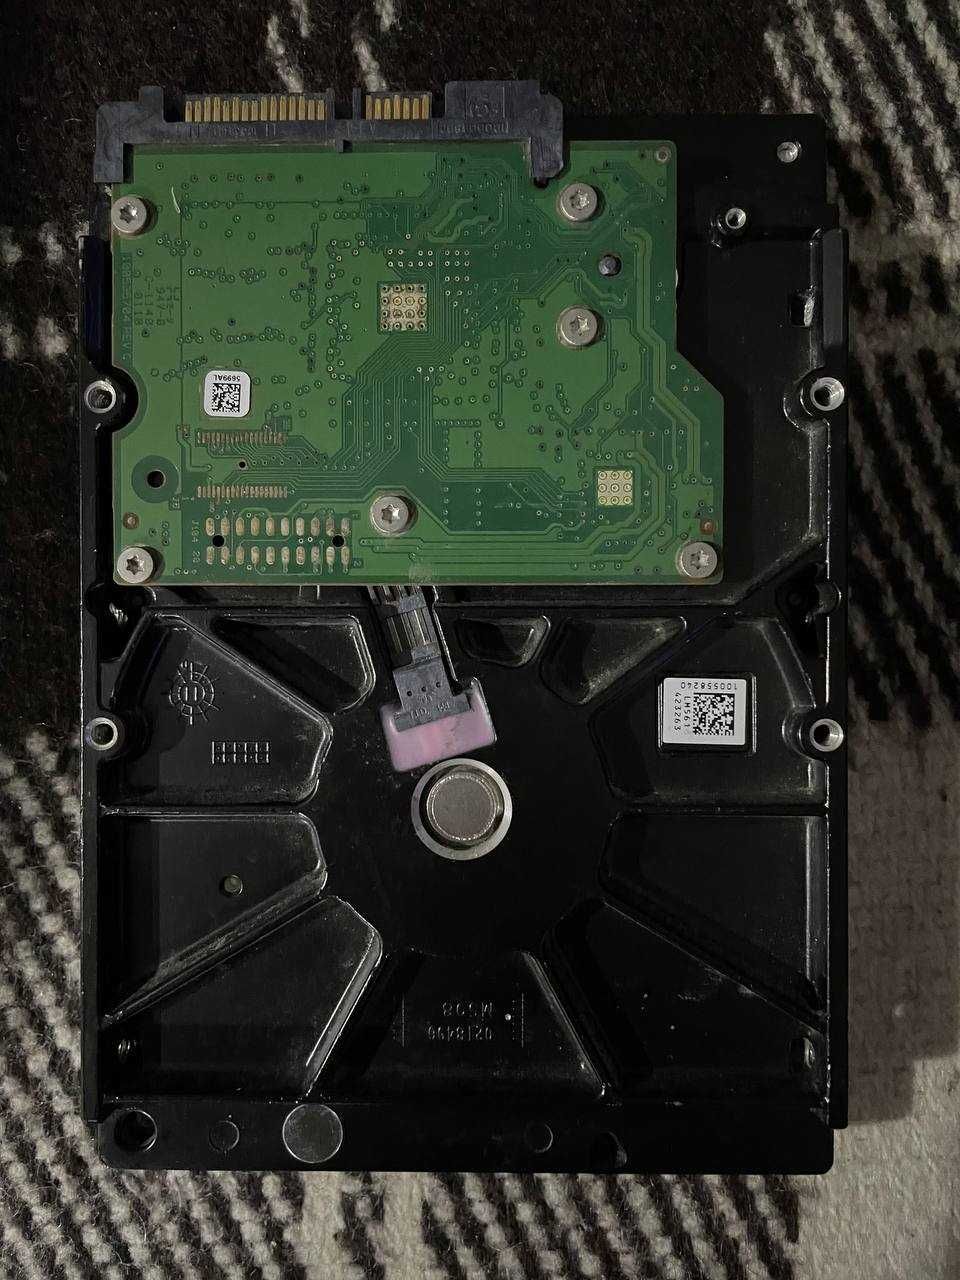 HDD жесткий диск Seagate 500gb в отличном состоянии